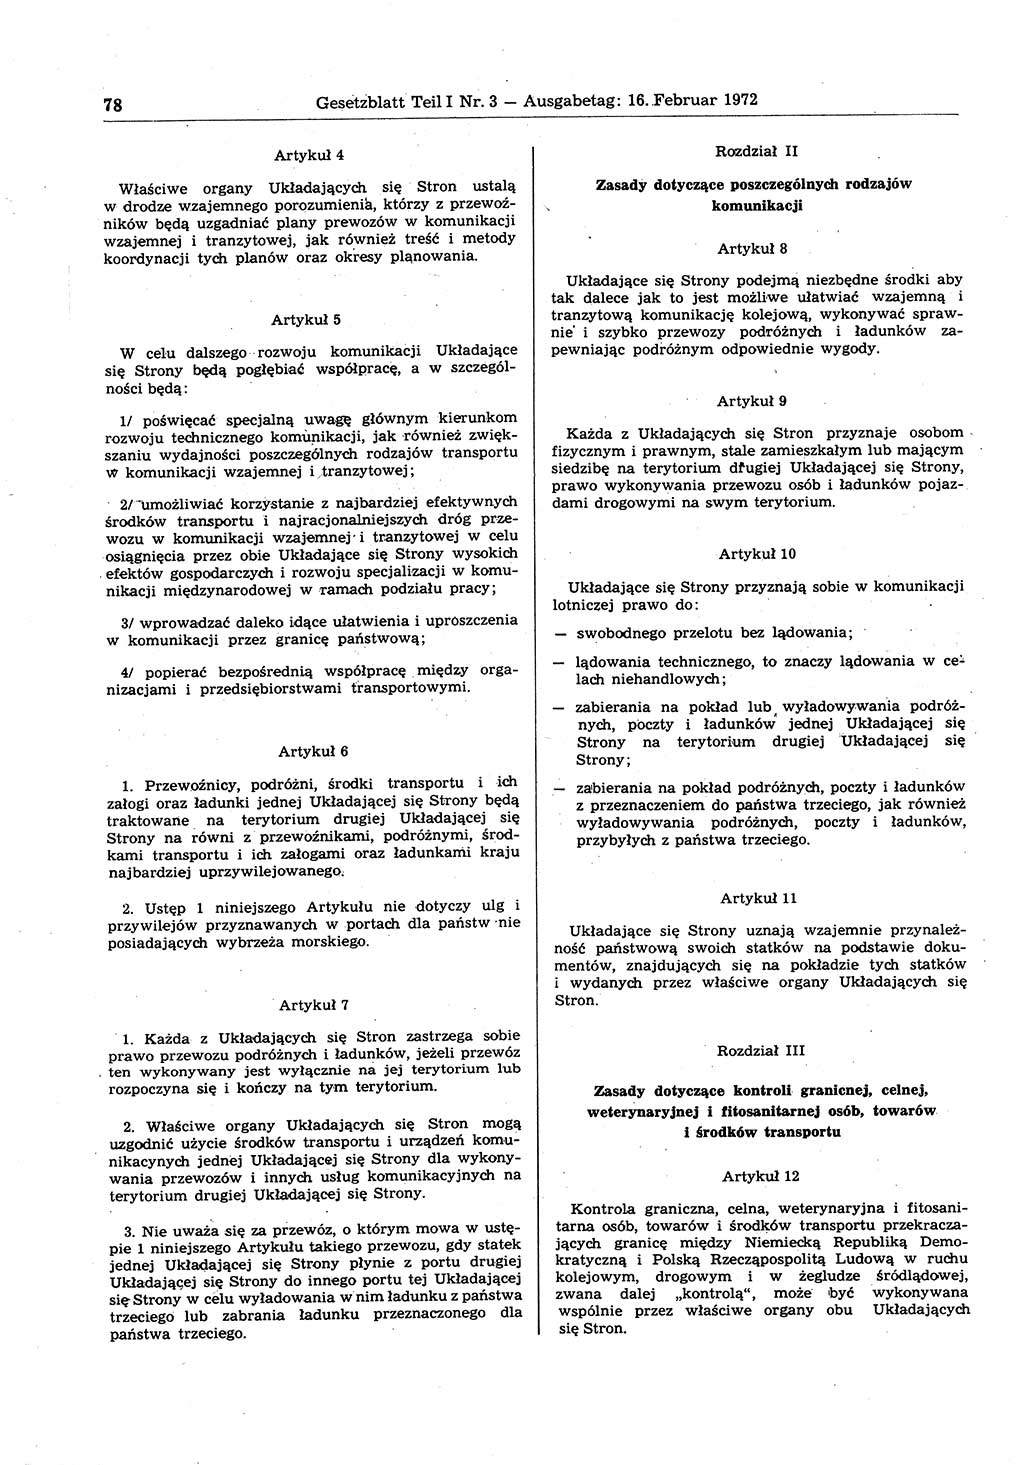 Gesetzblatt (GBl.) der Deutschen Demokratischen Republik (DDR) Teil Ⅰ 1972, Seite 78 (GBl. DDR Ⅰ 1972, S. 78)